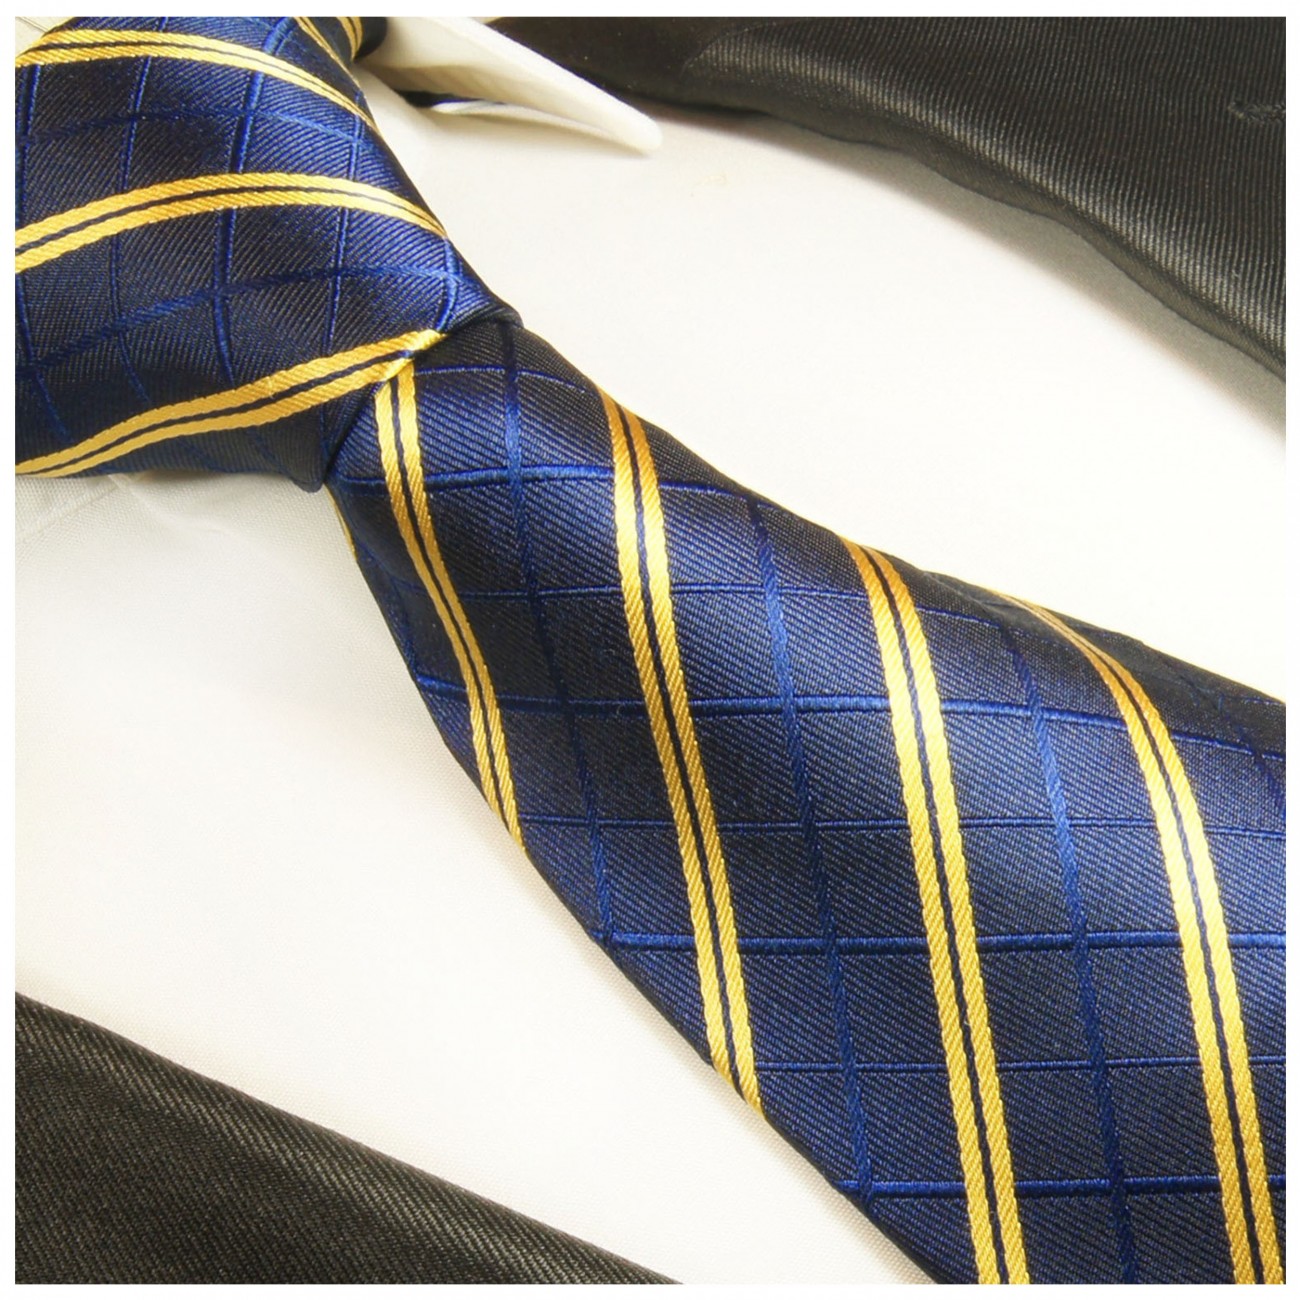 Blau gelb gestreiftes extra langes XL Krawatten Set 2tlg. 100% Seidenkrawatte + Einstecktuch by Paul Malone 2021